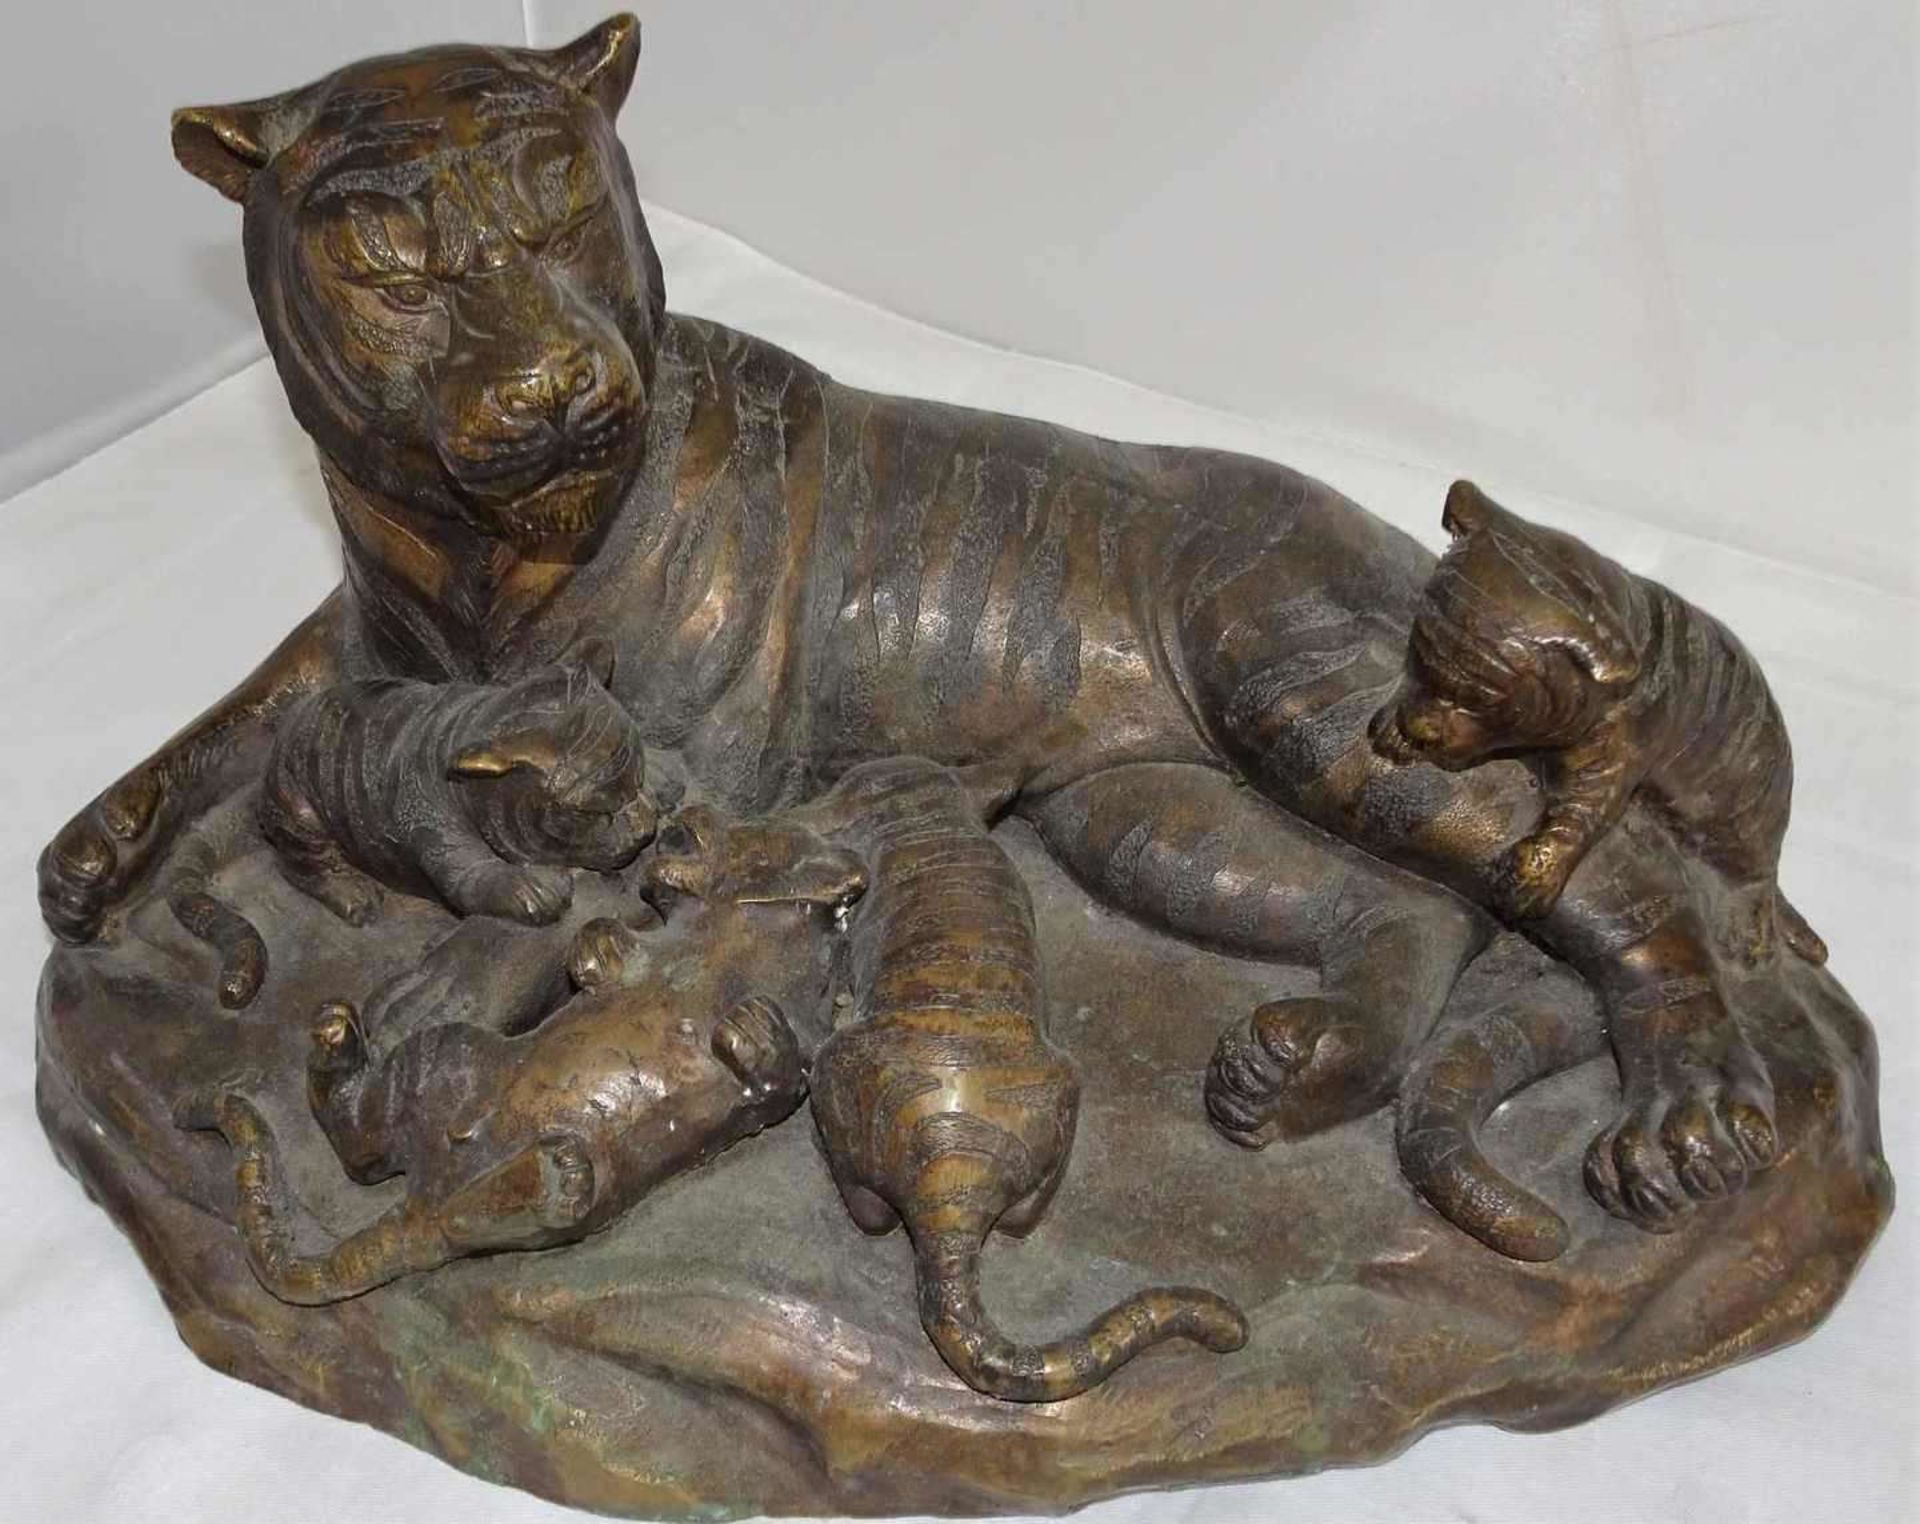 unbekannter Künstler, große Bronzefigur "Tiger mit Jungen", Höhe ca. 20 cm, Länge ca. 36 cm, Tiefe